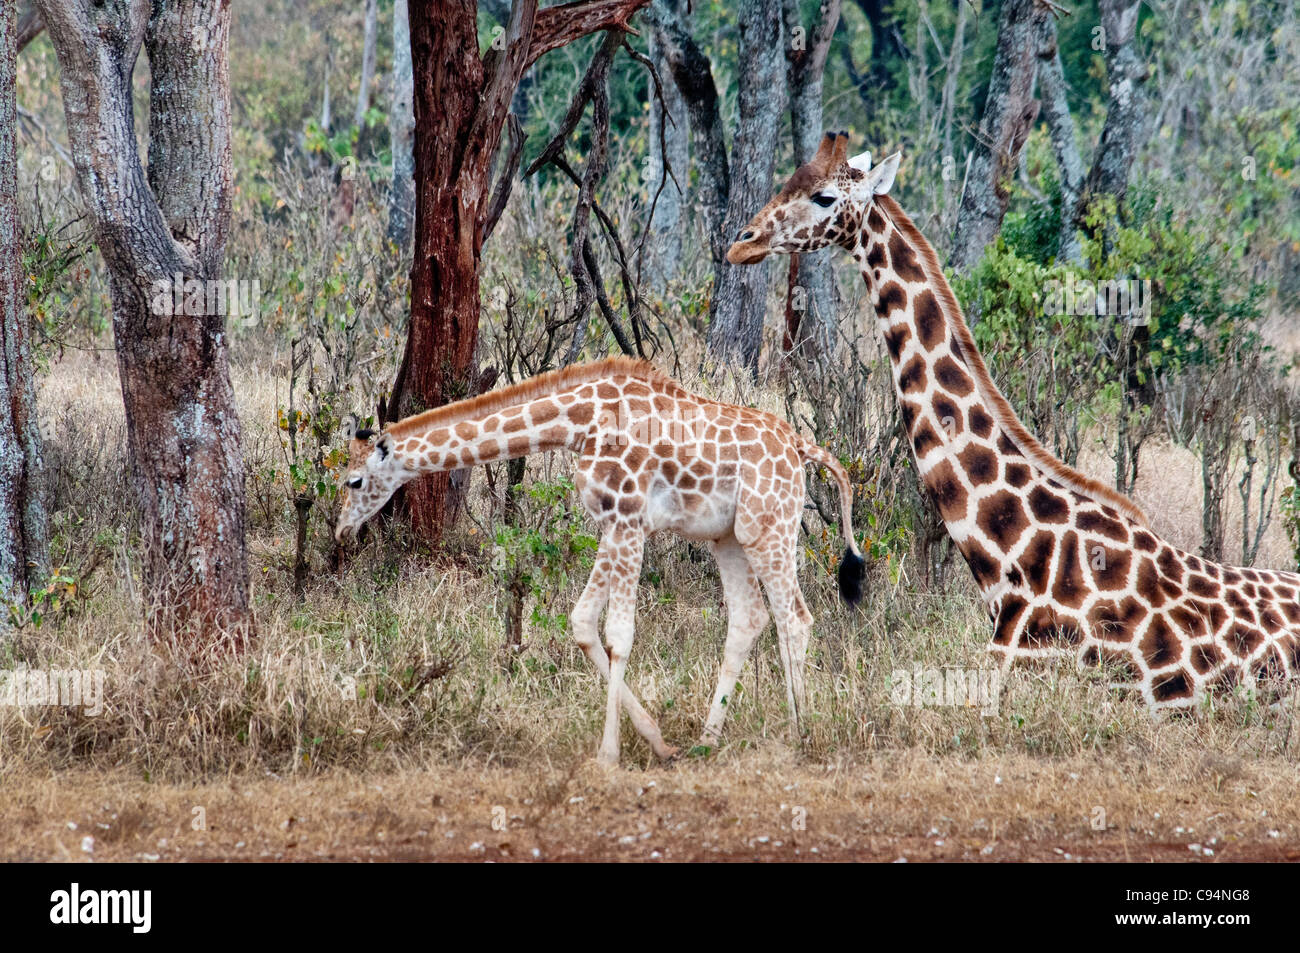 Mère girafe Rothschild s'asseoir avec l'un Étirement du mollet, Giraffe Manor, Nairobi, Kenya, Afrique Banque D'Images